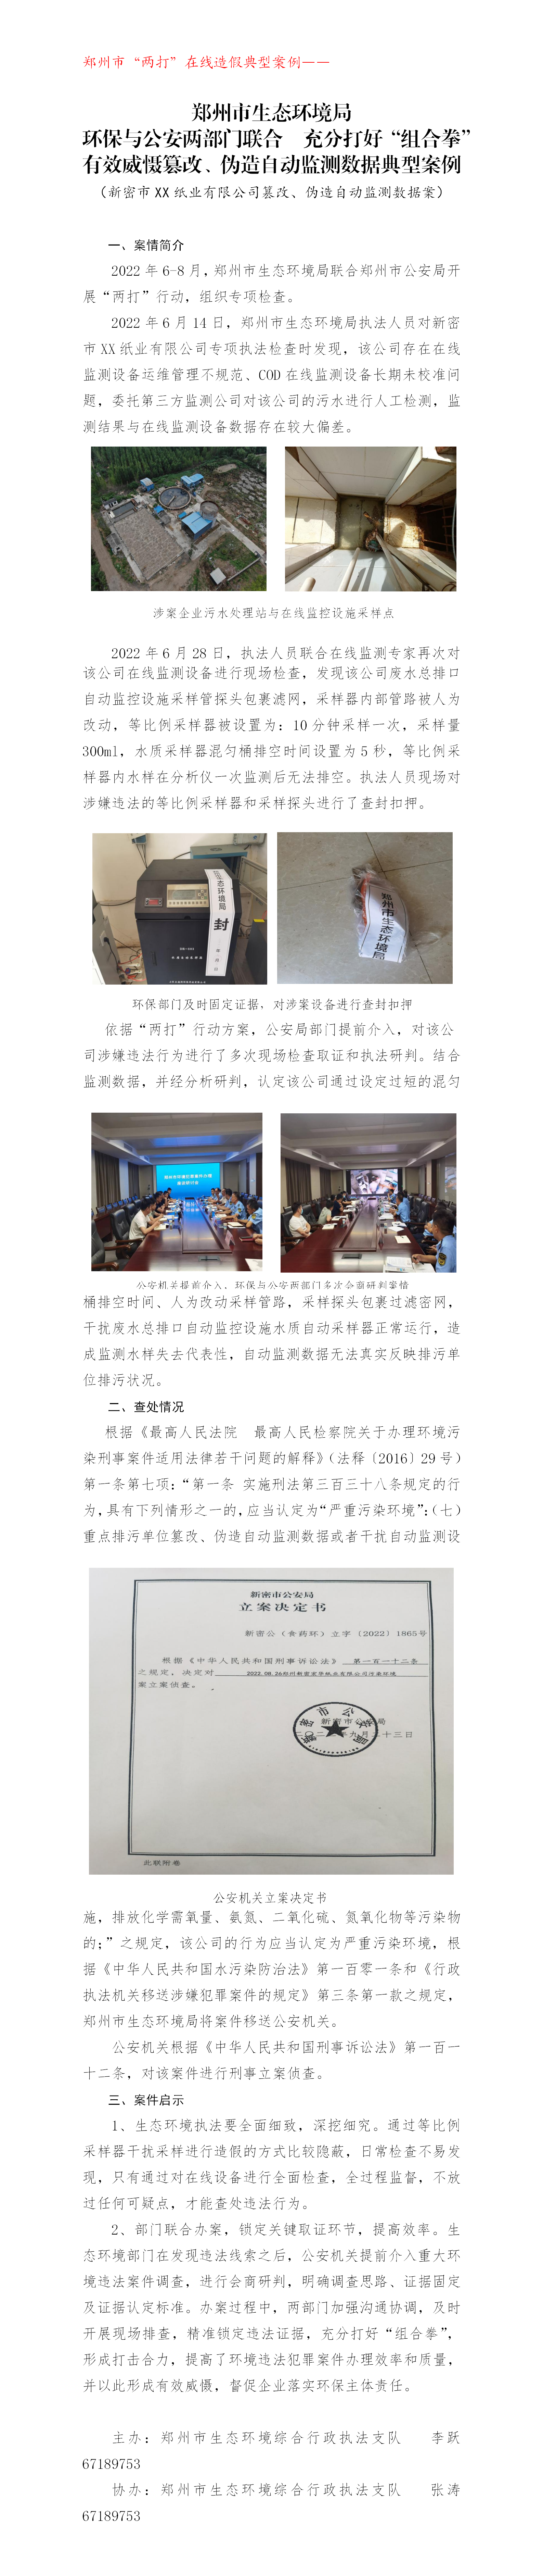 20221108--在线打假--郑州新密宏华纸业有限公司干扰自动监测设施案_01.png